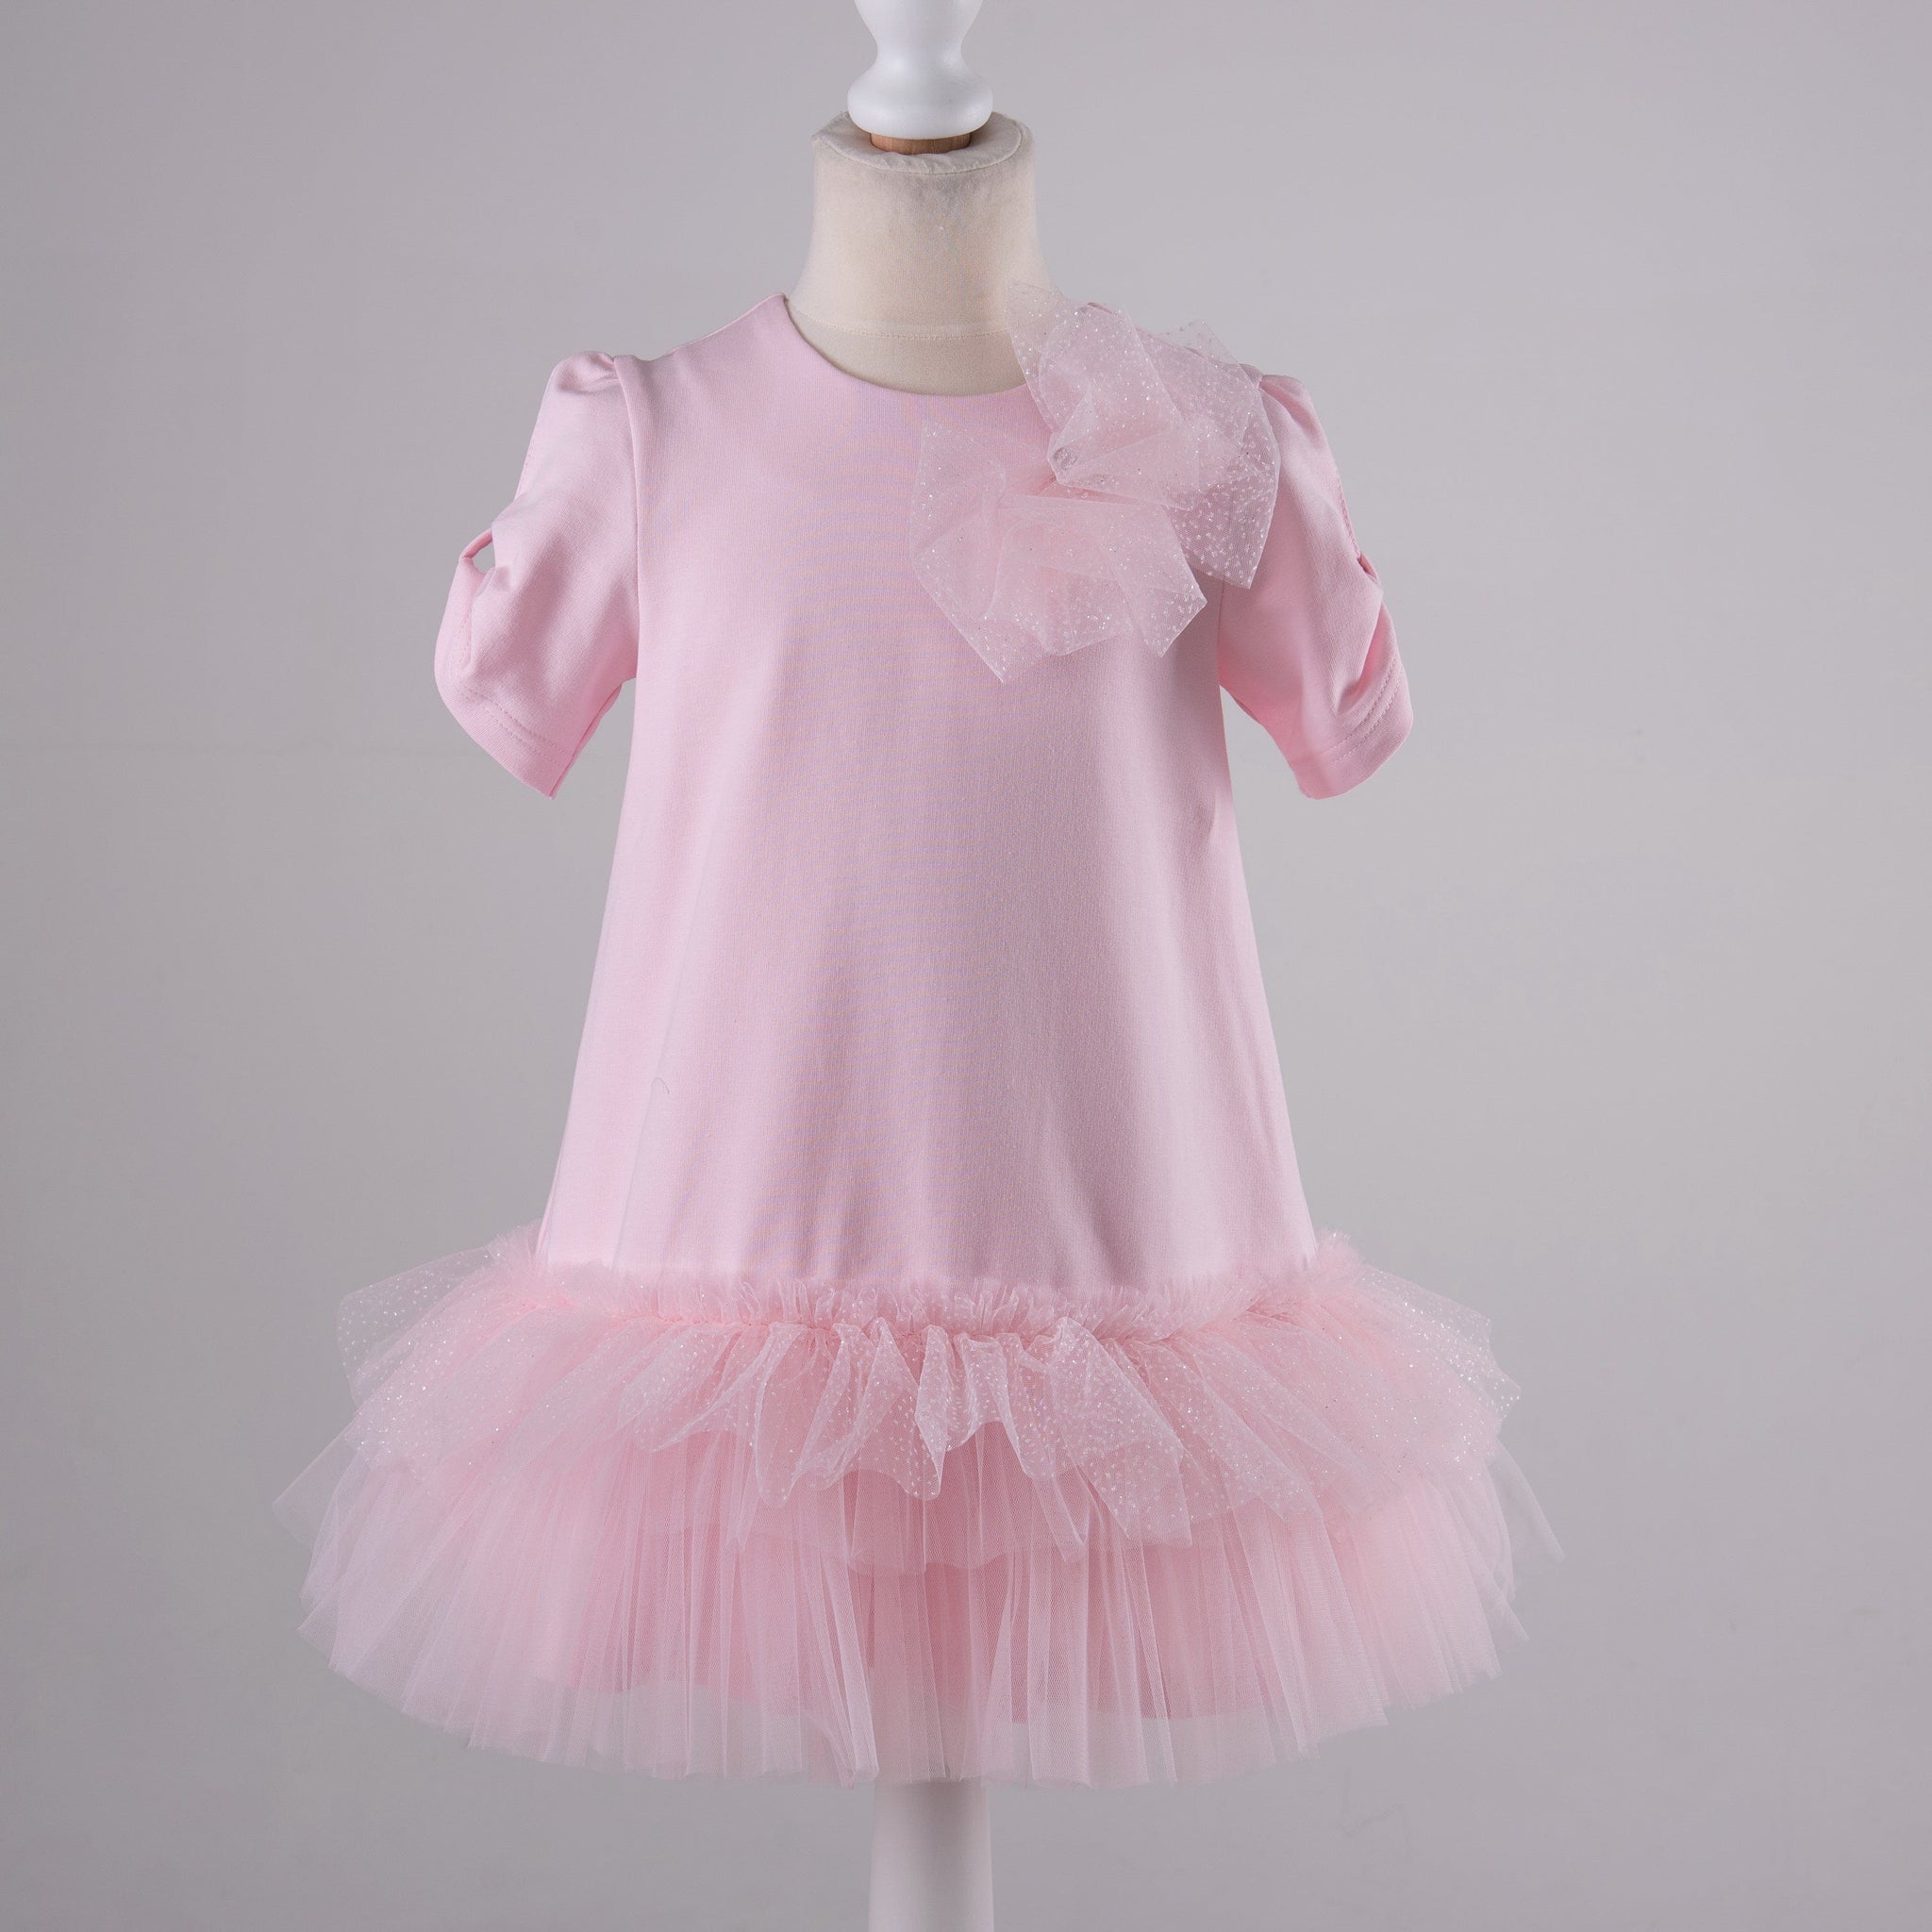 Daga 9714 Daga Girls Pink Frill Dress